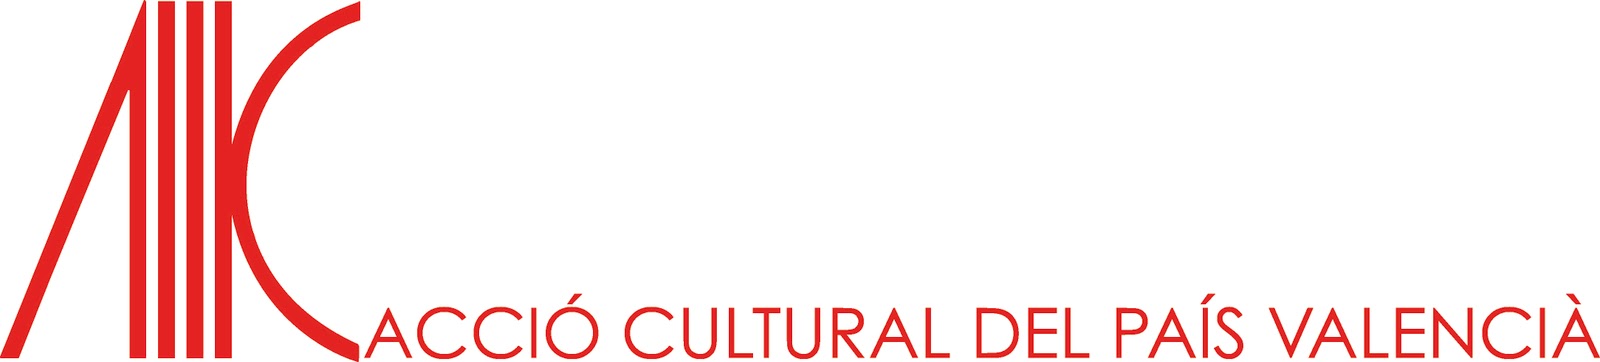 logo-accio-cultural-del-pais-valencia